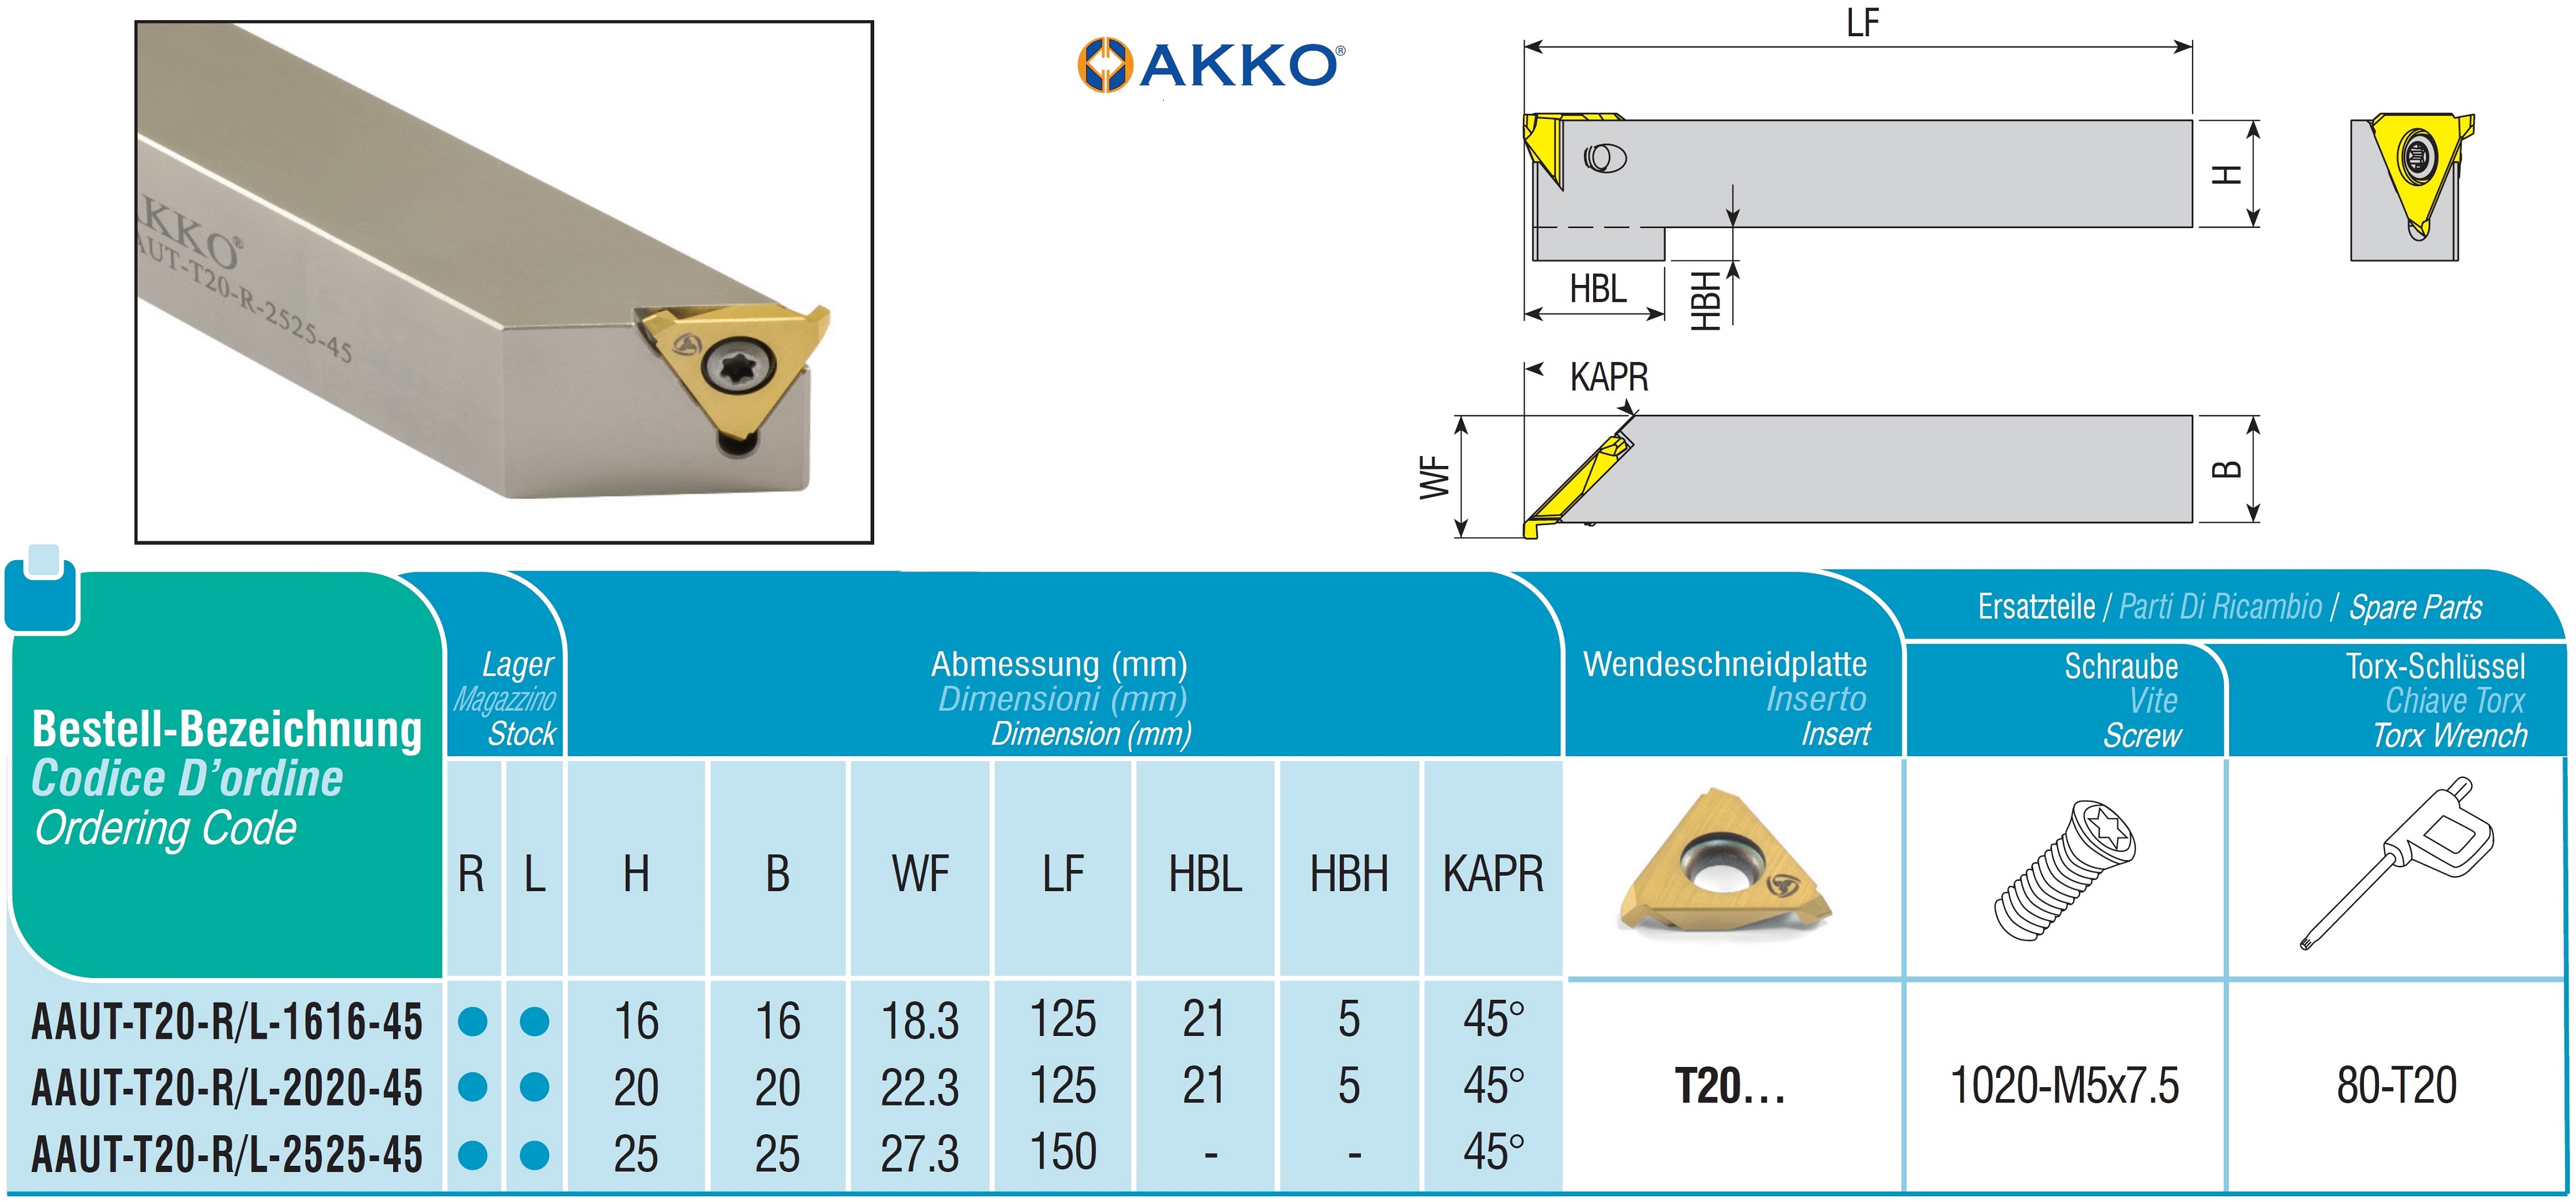 AKKO-Drehhalter für axiale Freistiche 20 mm x 20 mm, kompatibel mit AKKO-Wendeplatte T20… 
Ausführung links